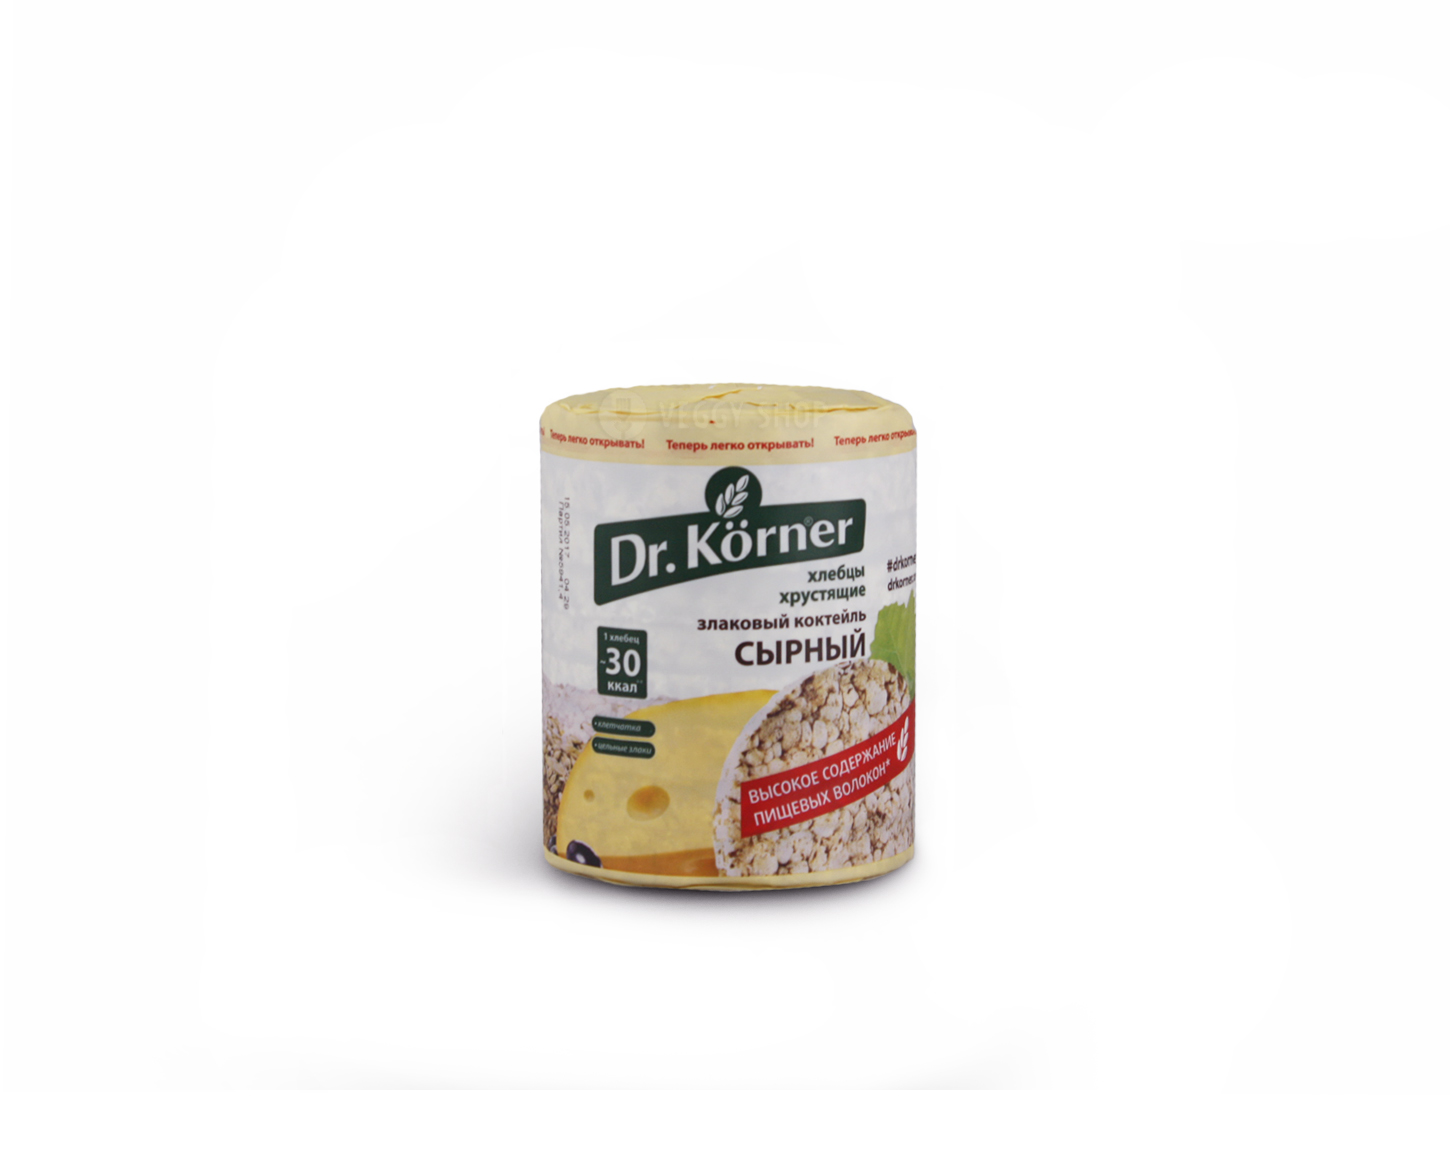 Хлебцы "Злаковый коктейль" сырный "Dr. Korner" 100 г